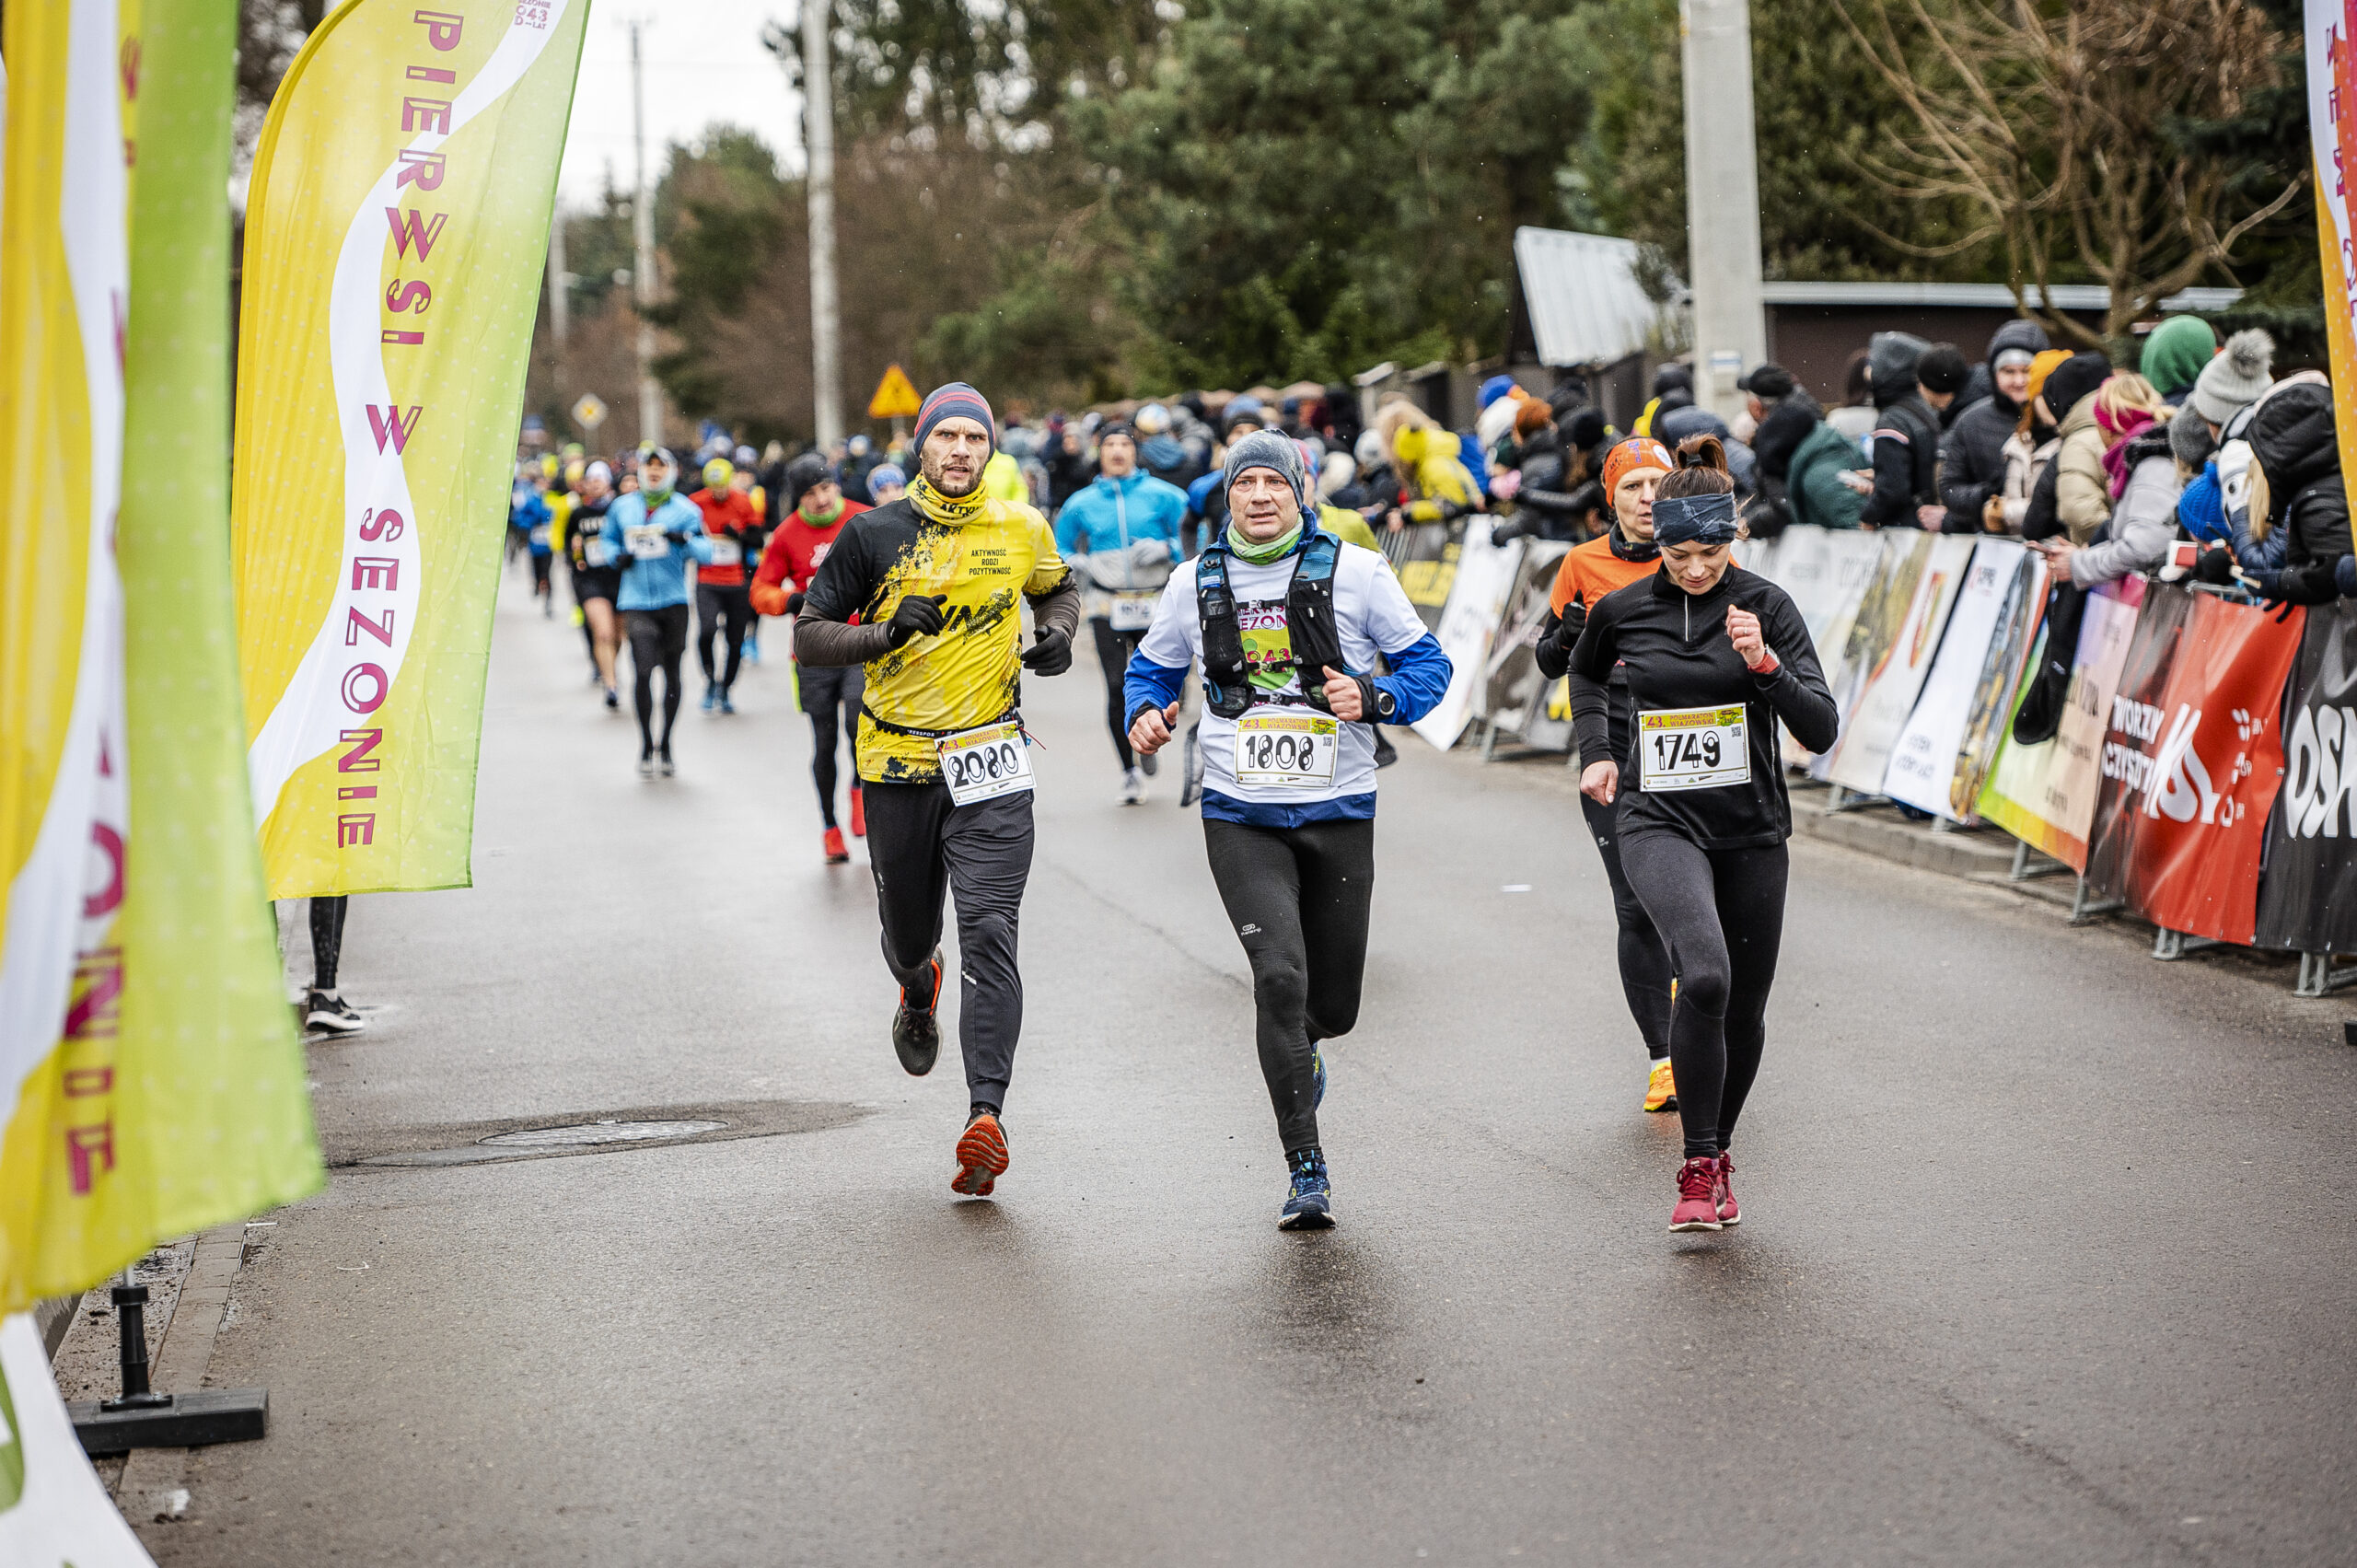 Trzech biegnących mężczyzn. Za nimi kolejni biegacze. Z lewej strony banery żółto-białe. Z prawej za barierkami stoją dorośli i kibicują biegaczom.